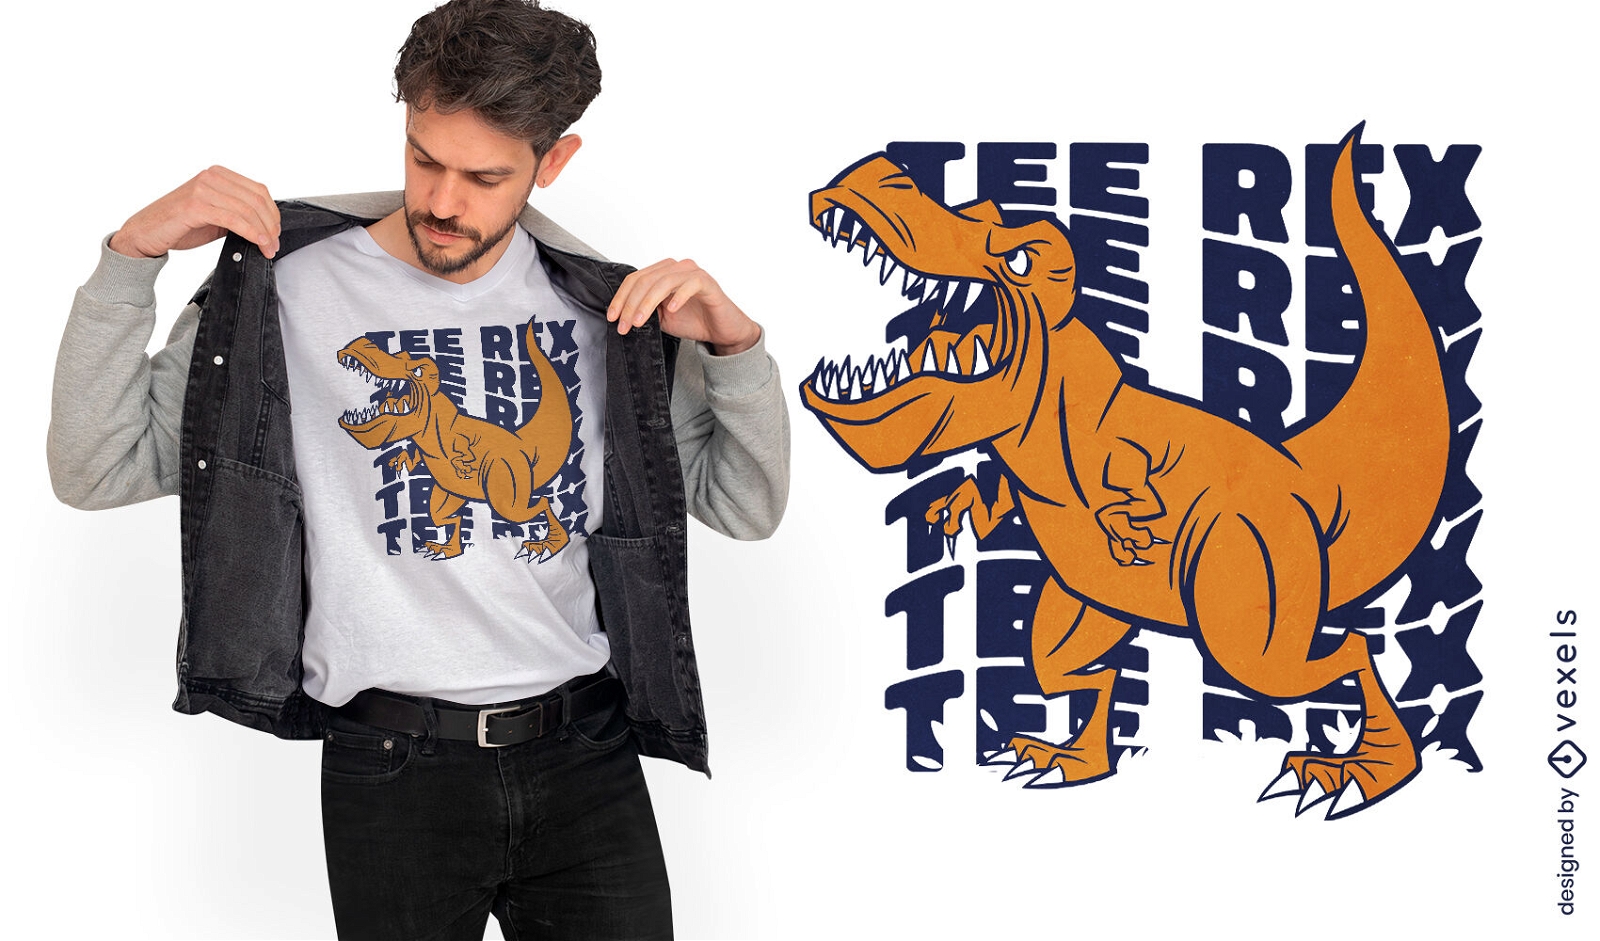 Dise?o de camiseta con cita de dinosaurio T-rex